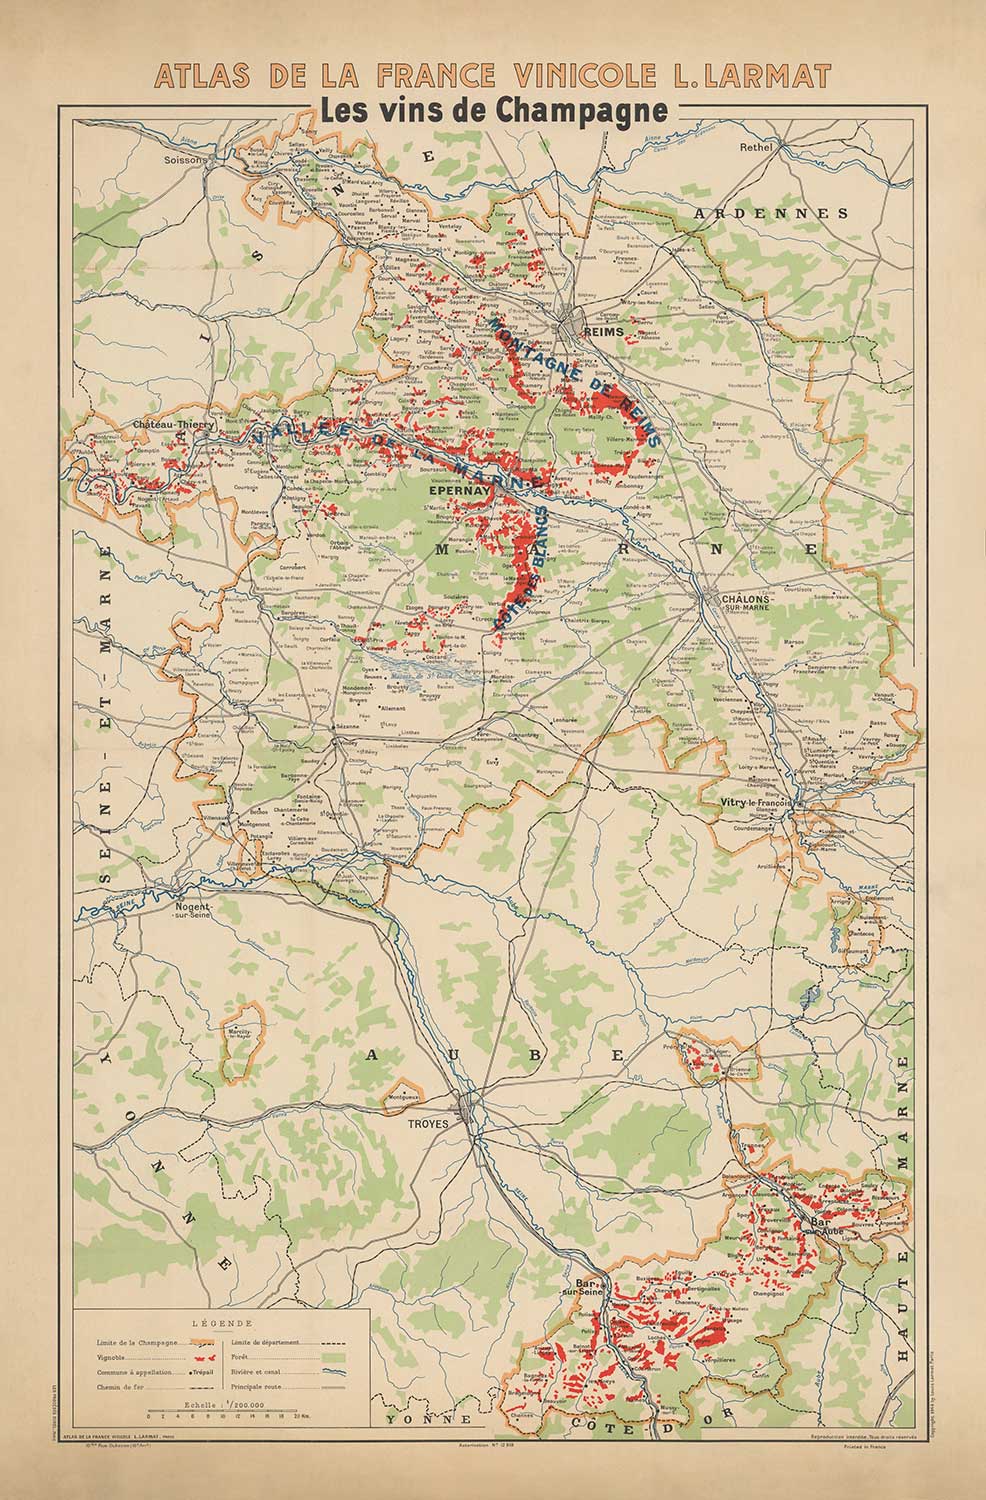 Ancienne carte des vignobles de Champagne, France, 1944 par Louis Larmat - Reims, Epernay, Troyes, Chatau-Thierry, Bar-Sur-Seine